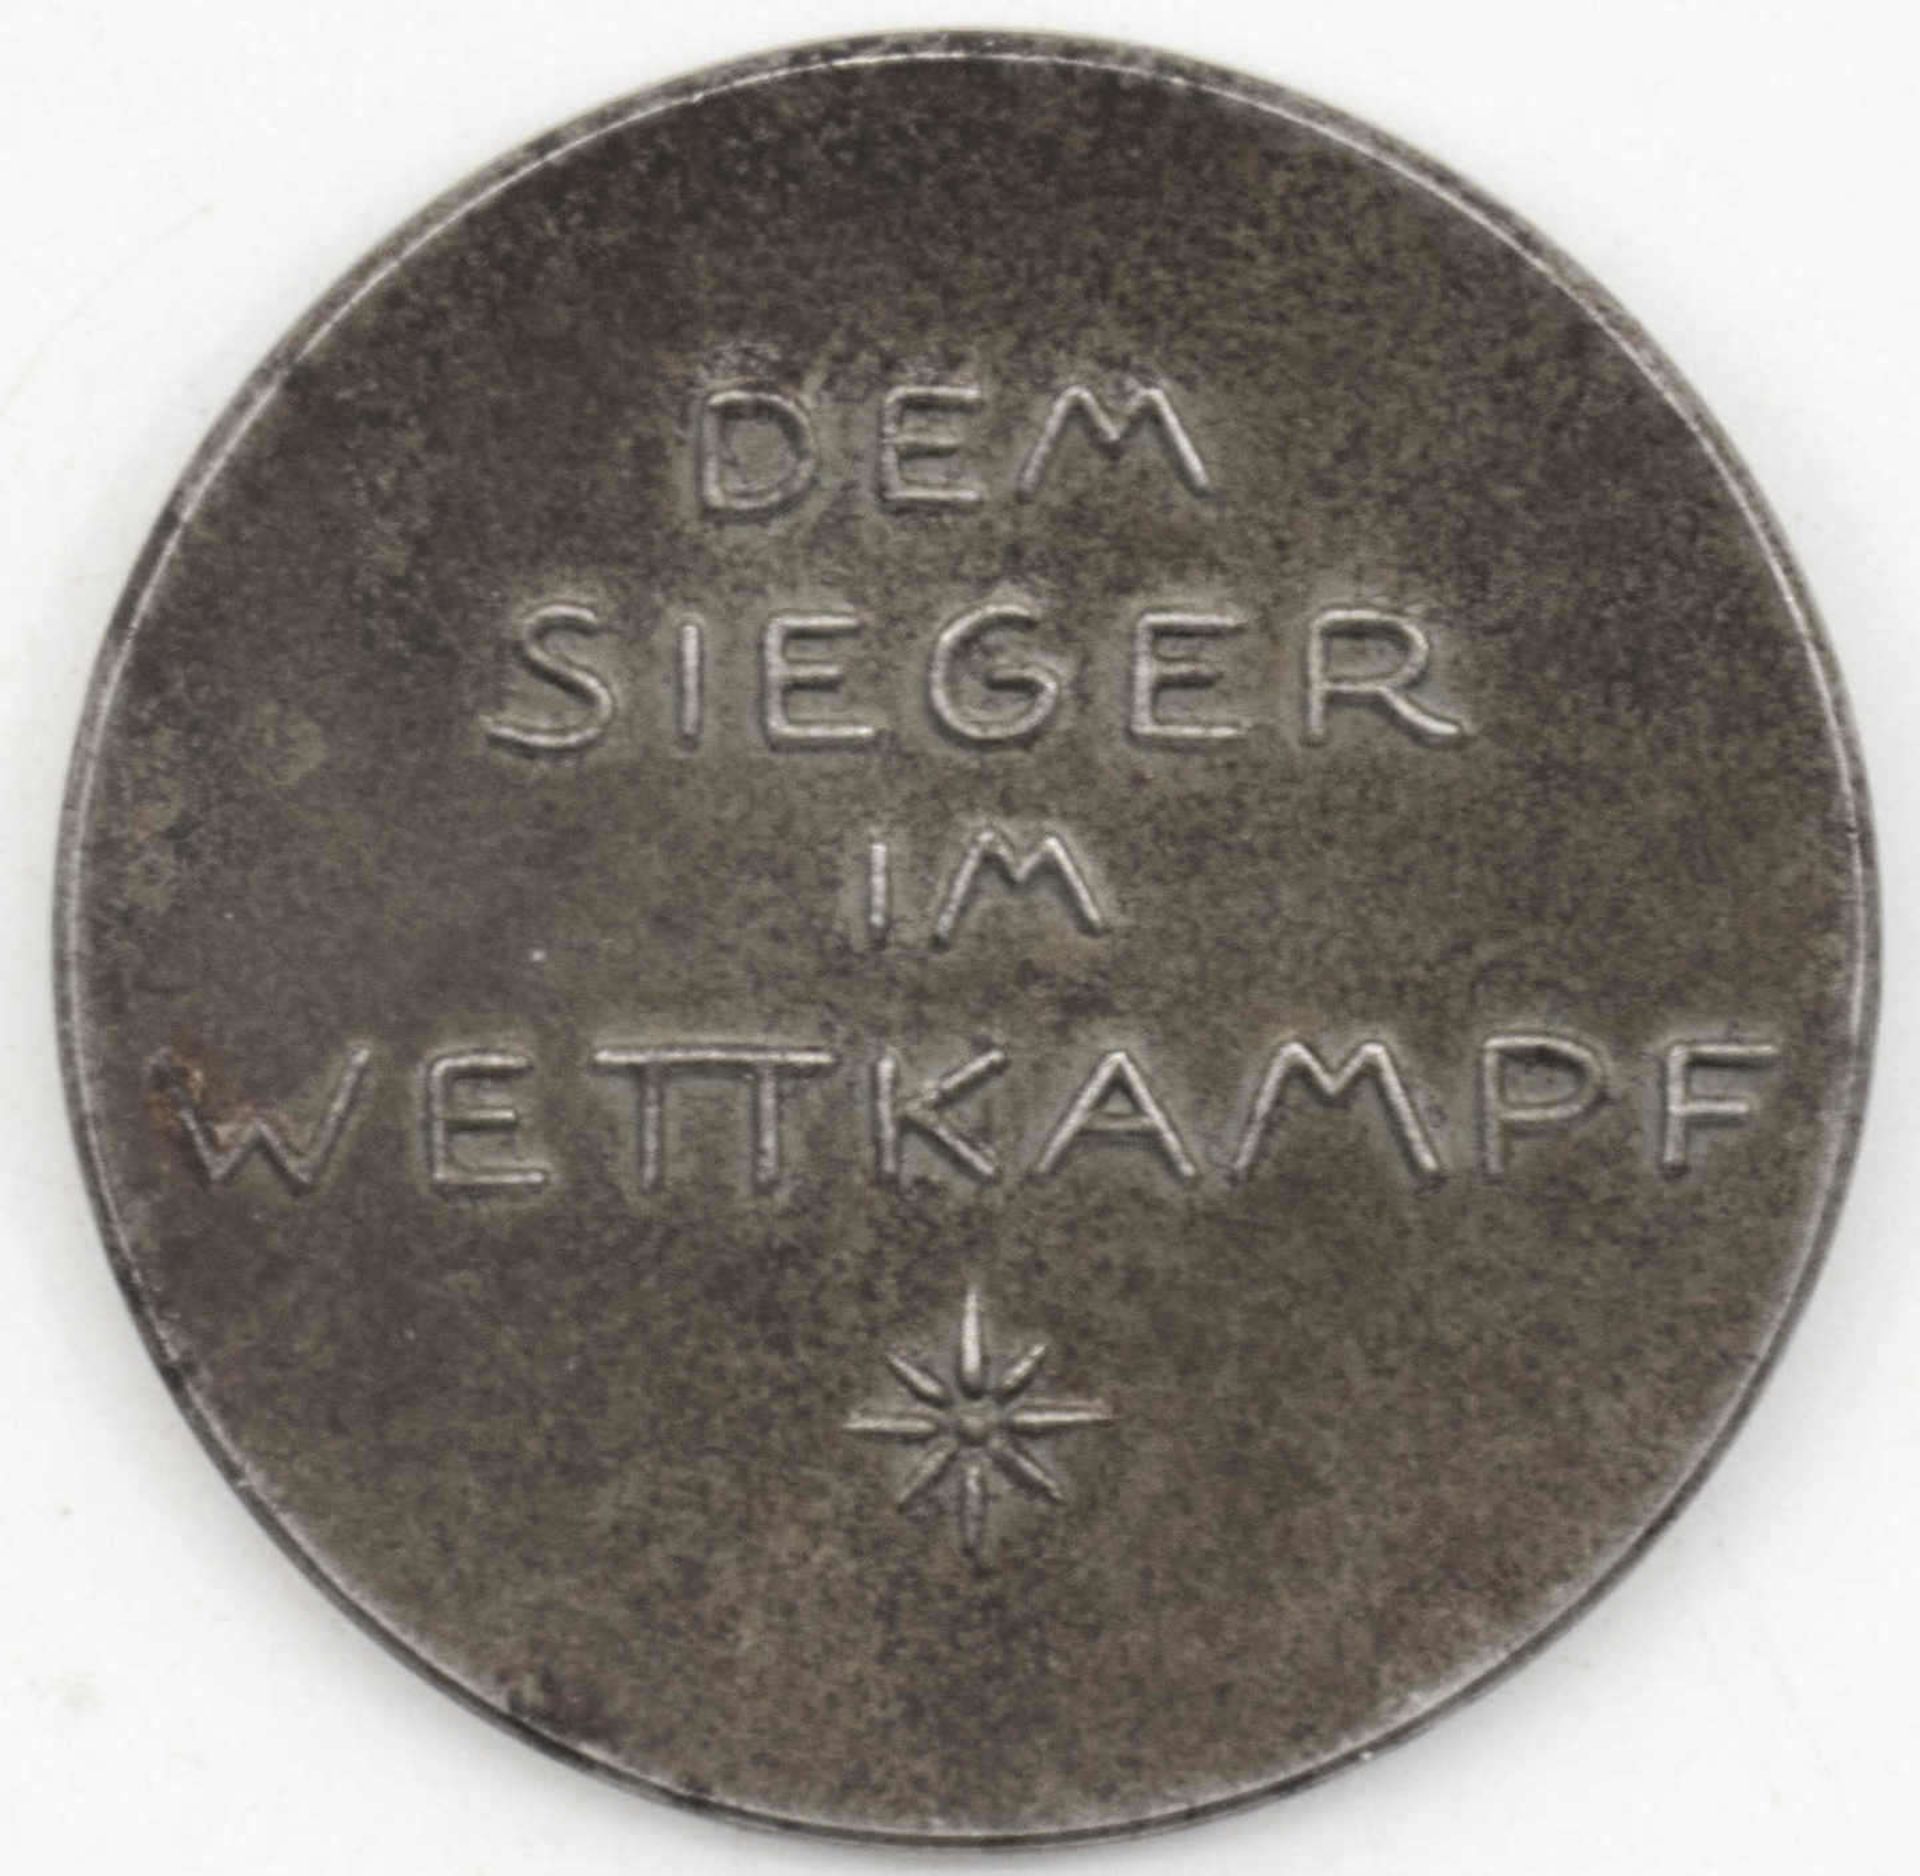 Medaille / Auszeichnung "Württ. Jugendwehr - dem Sieger im Wettkampf". Durchmesser: ca. 45 mm. - Bild 2 aus 2